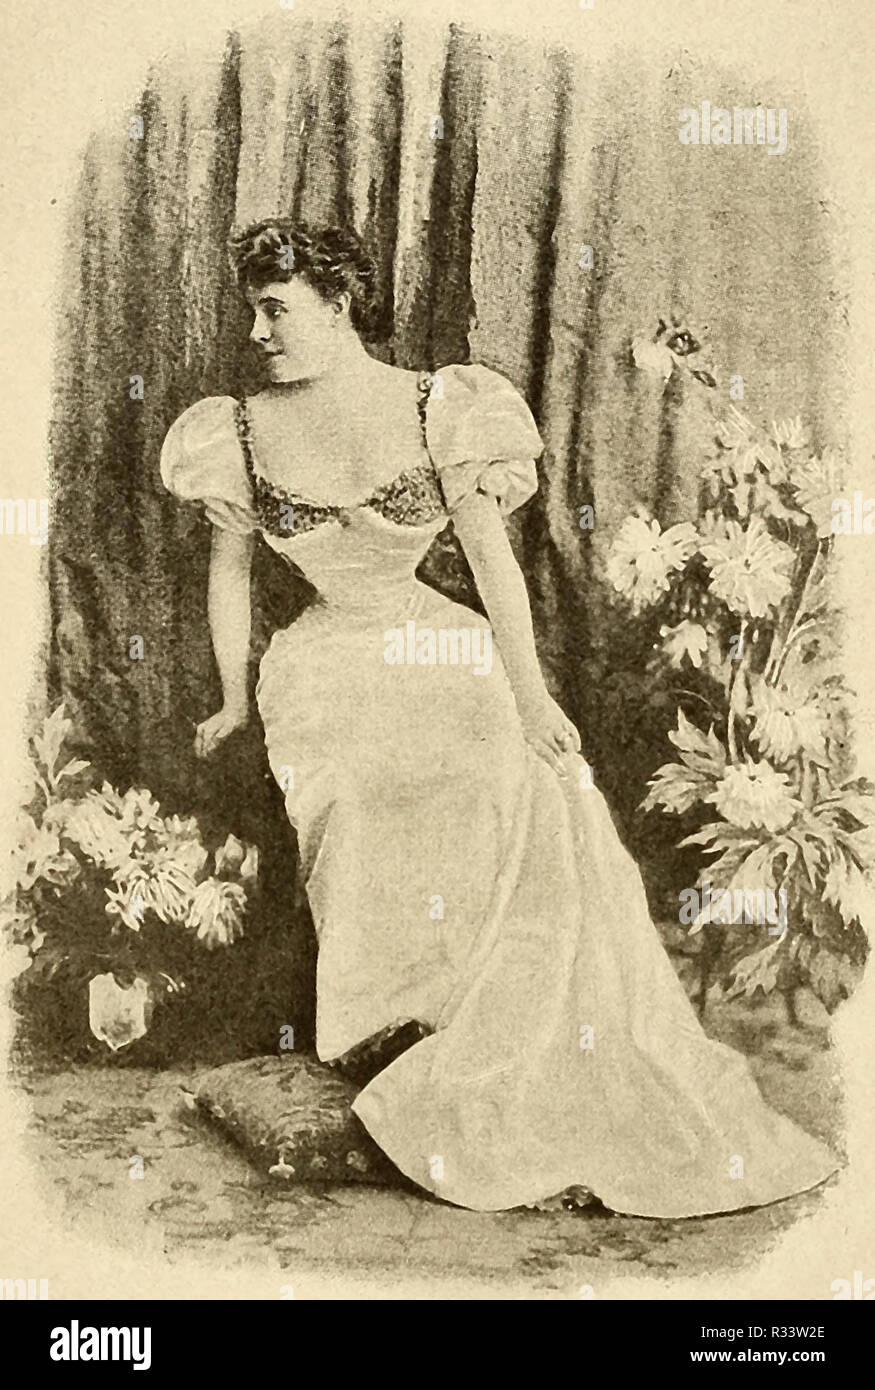 Sibyl Sanderson (Diciembre 7, 1864 - Mayo 16, 1903) - una famosa soprano operística americana durante la Belle Epoque parisina Foto de stock